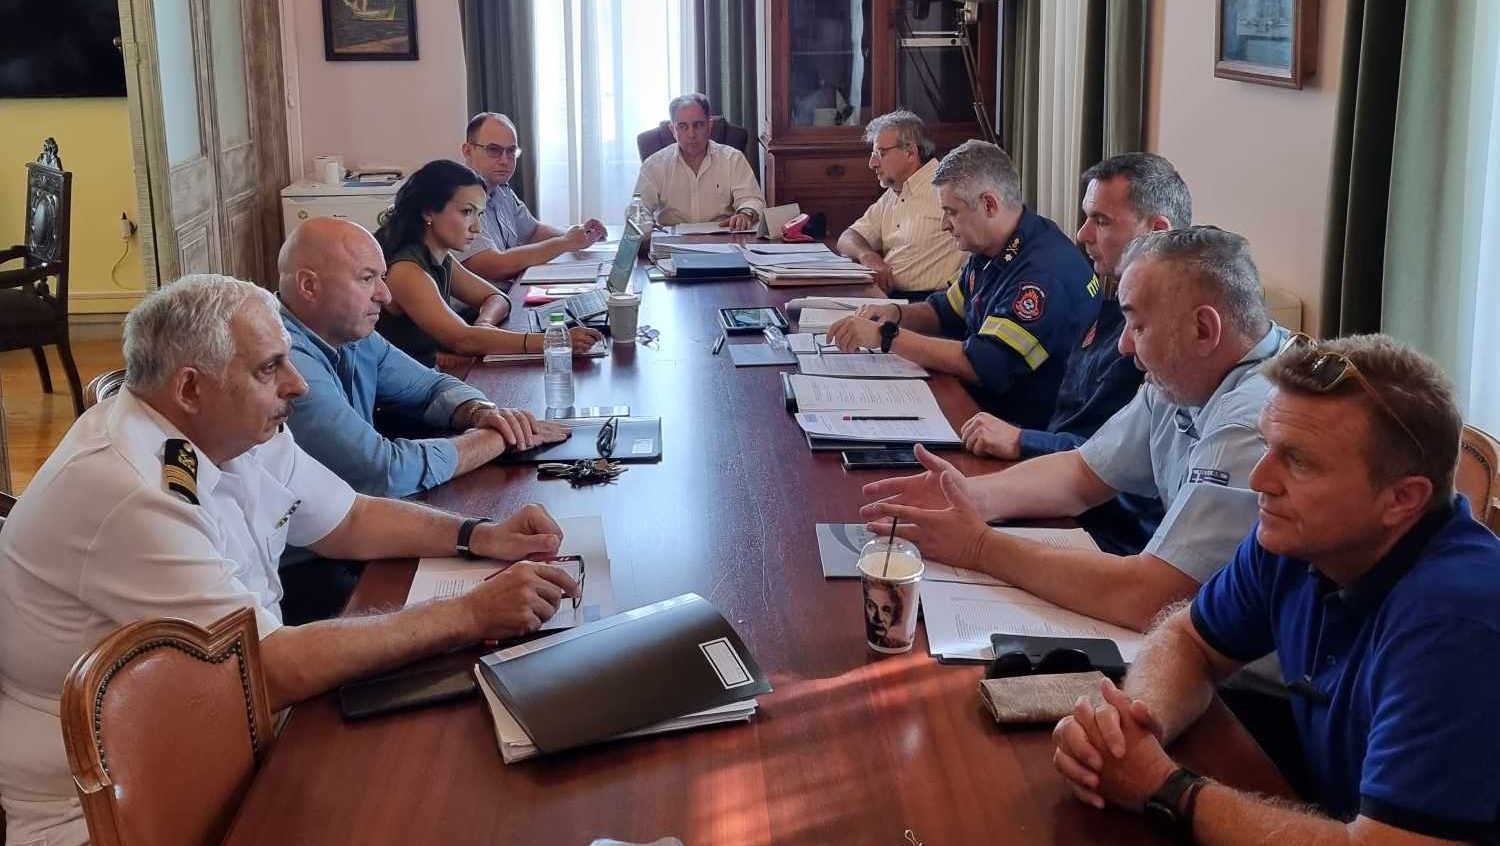 Δήμος Μυτιλήνης:  Συγκροτήθηκε Ομάδα Εργασίας  για την  προληπτική απομάκρυνση πολιτών σε περίπτωση πυρκαγιάς